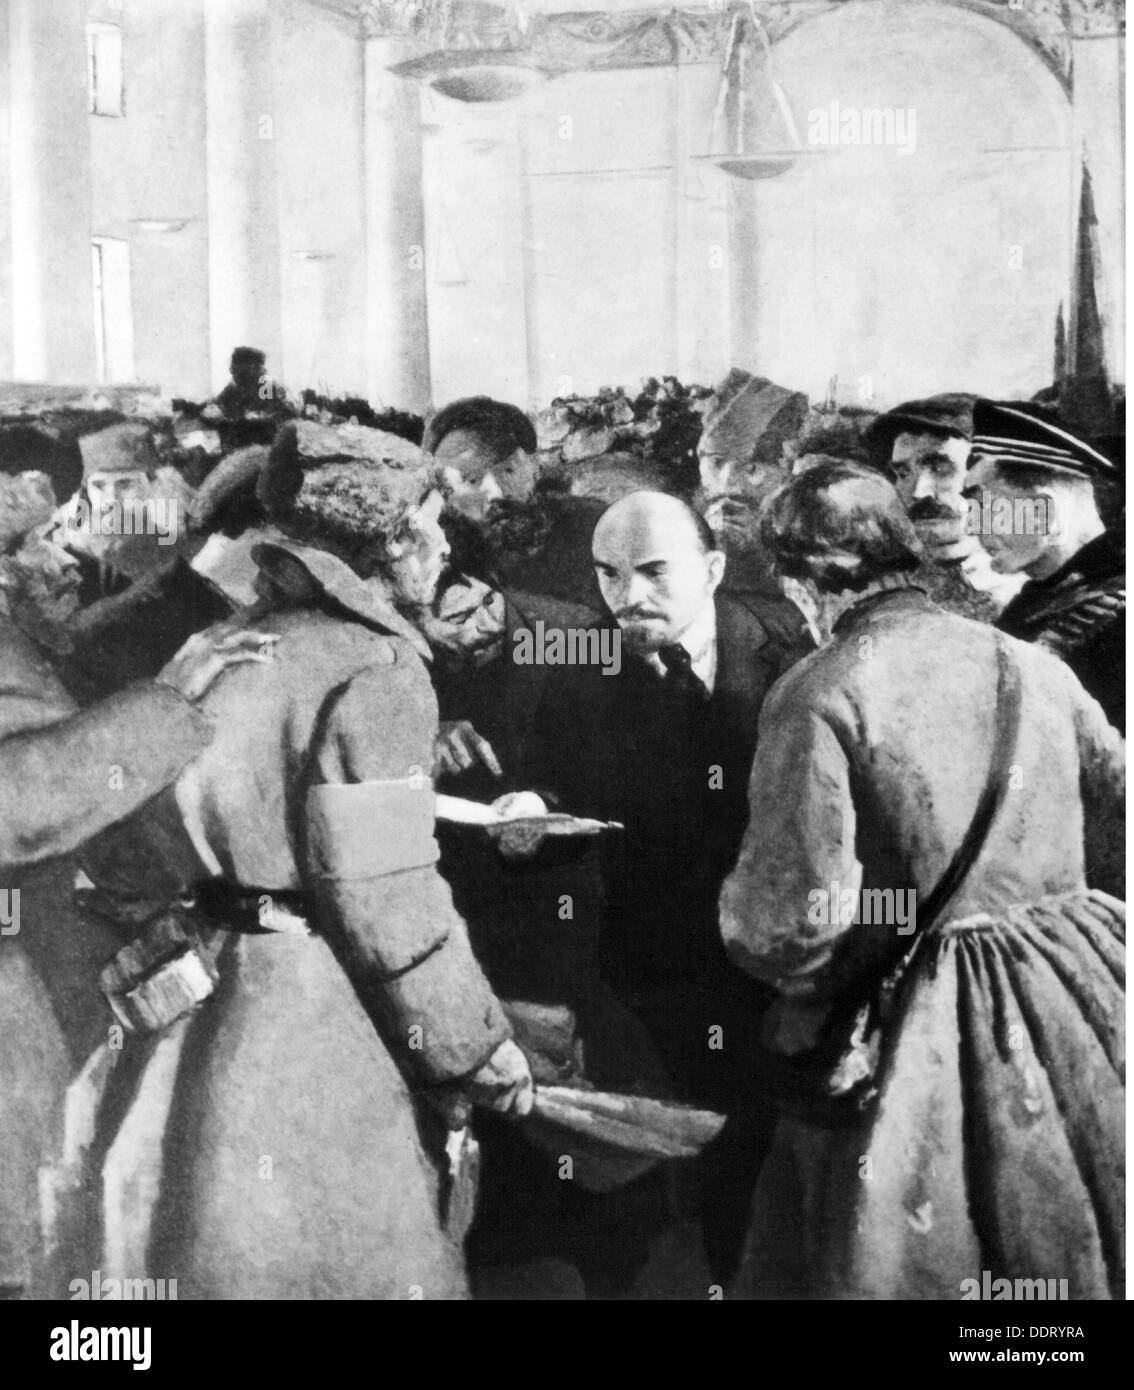 Lenin (Vladimir Ilyich Ulyanov), 22.4.1870 - 21.1.1924, político ruso, en manifestación con soldados revolucionarios, después de pintar por Sergei Vasilyevich Gerasimov (1885 - 1964), detalle, siglo 20, Foto de stock